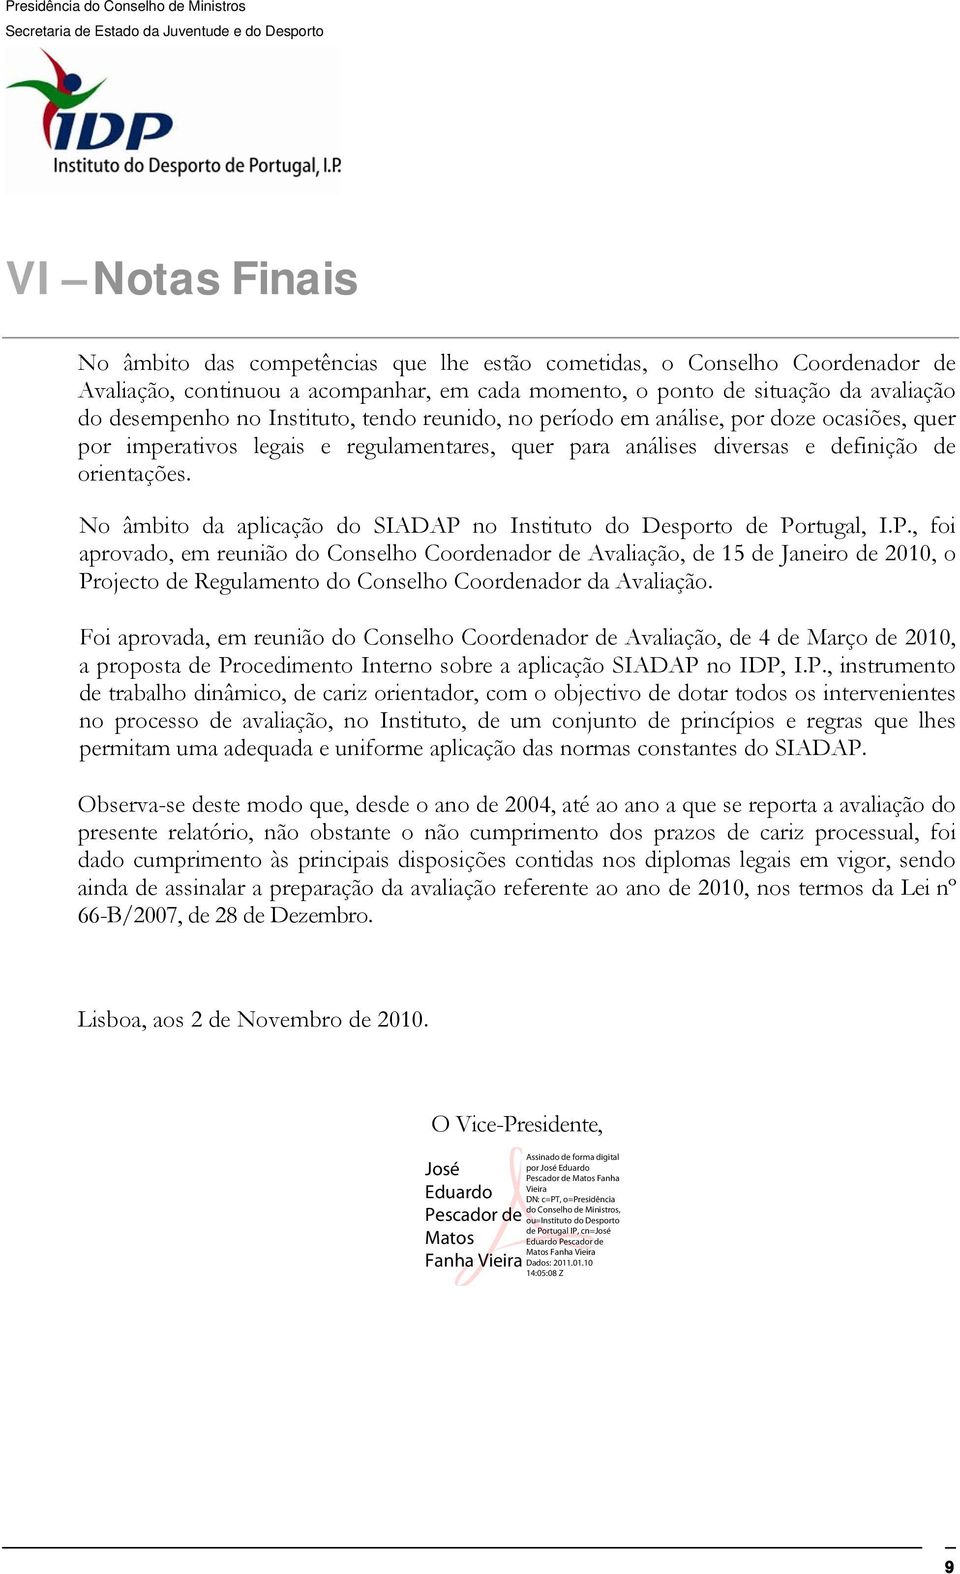 No âmbito da aplicação do SIADAP no Instituto do Desporto de Portugal, I.P., foi aprovado, em reunião do Conselho Coordenador de Avaliação, de 15 de Janeiro de 2010, o Projecto de Regulamento do Conselho Coordenador da Avaliação.